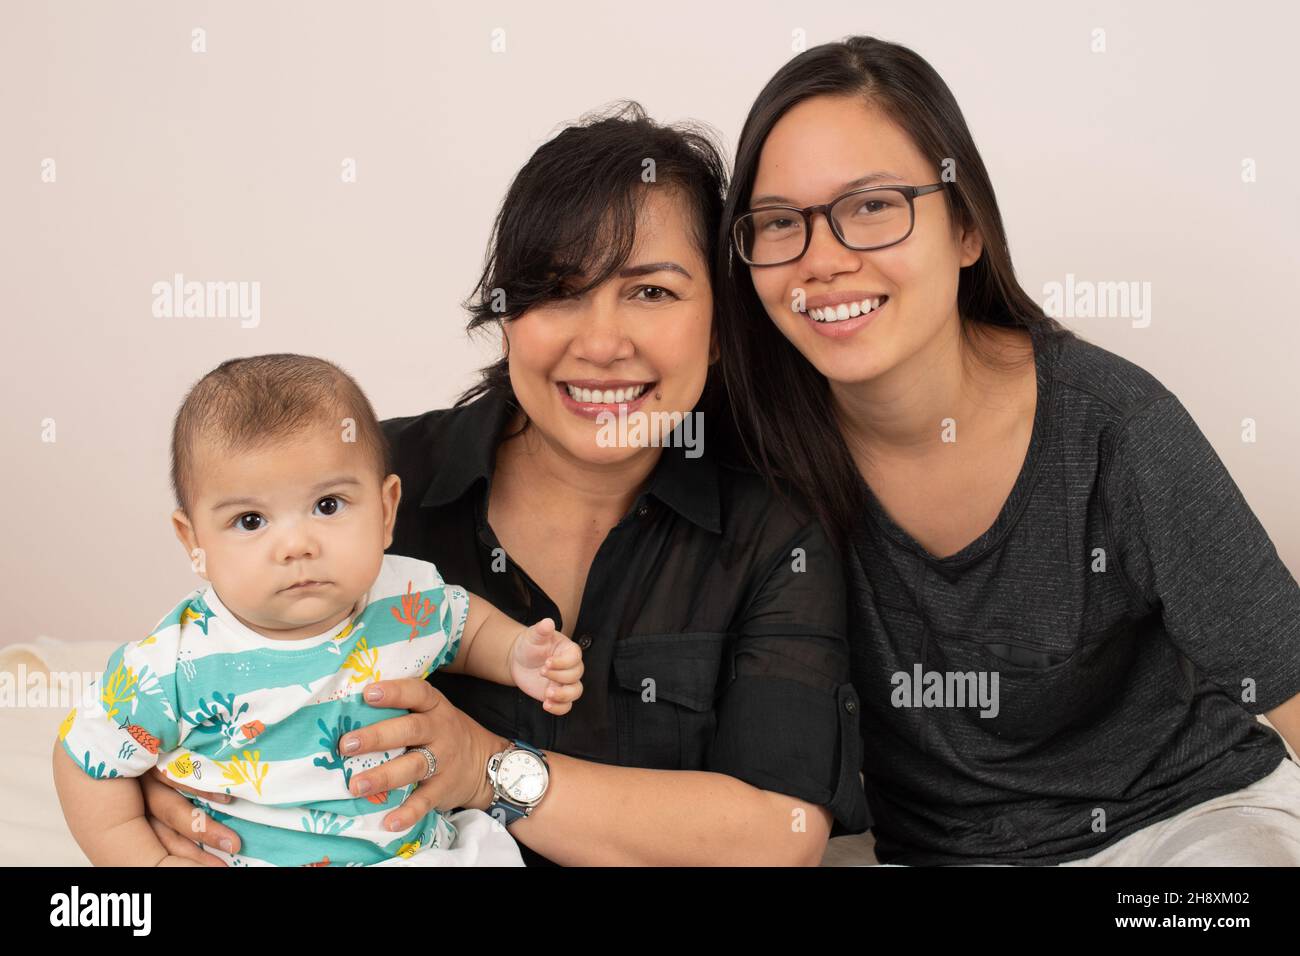 niño de 3 meses con hermana mayor, de 20 años y madre, retrato, mirando cámara Foto de stock